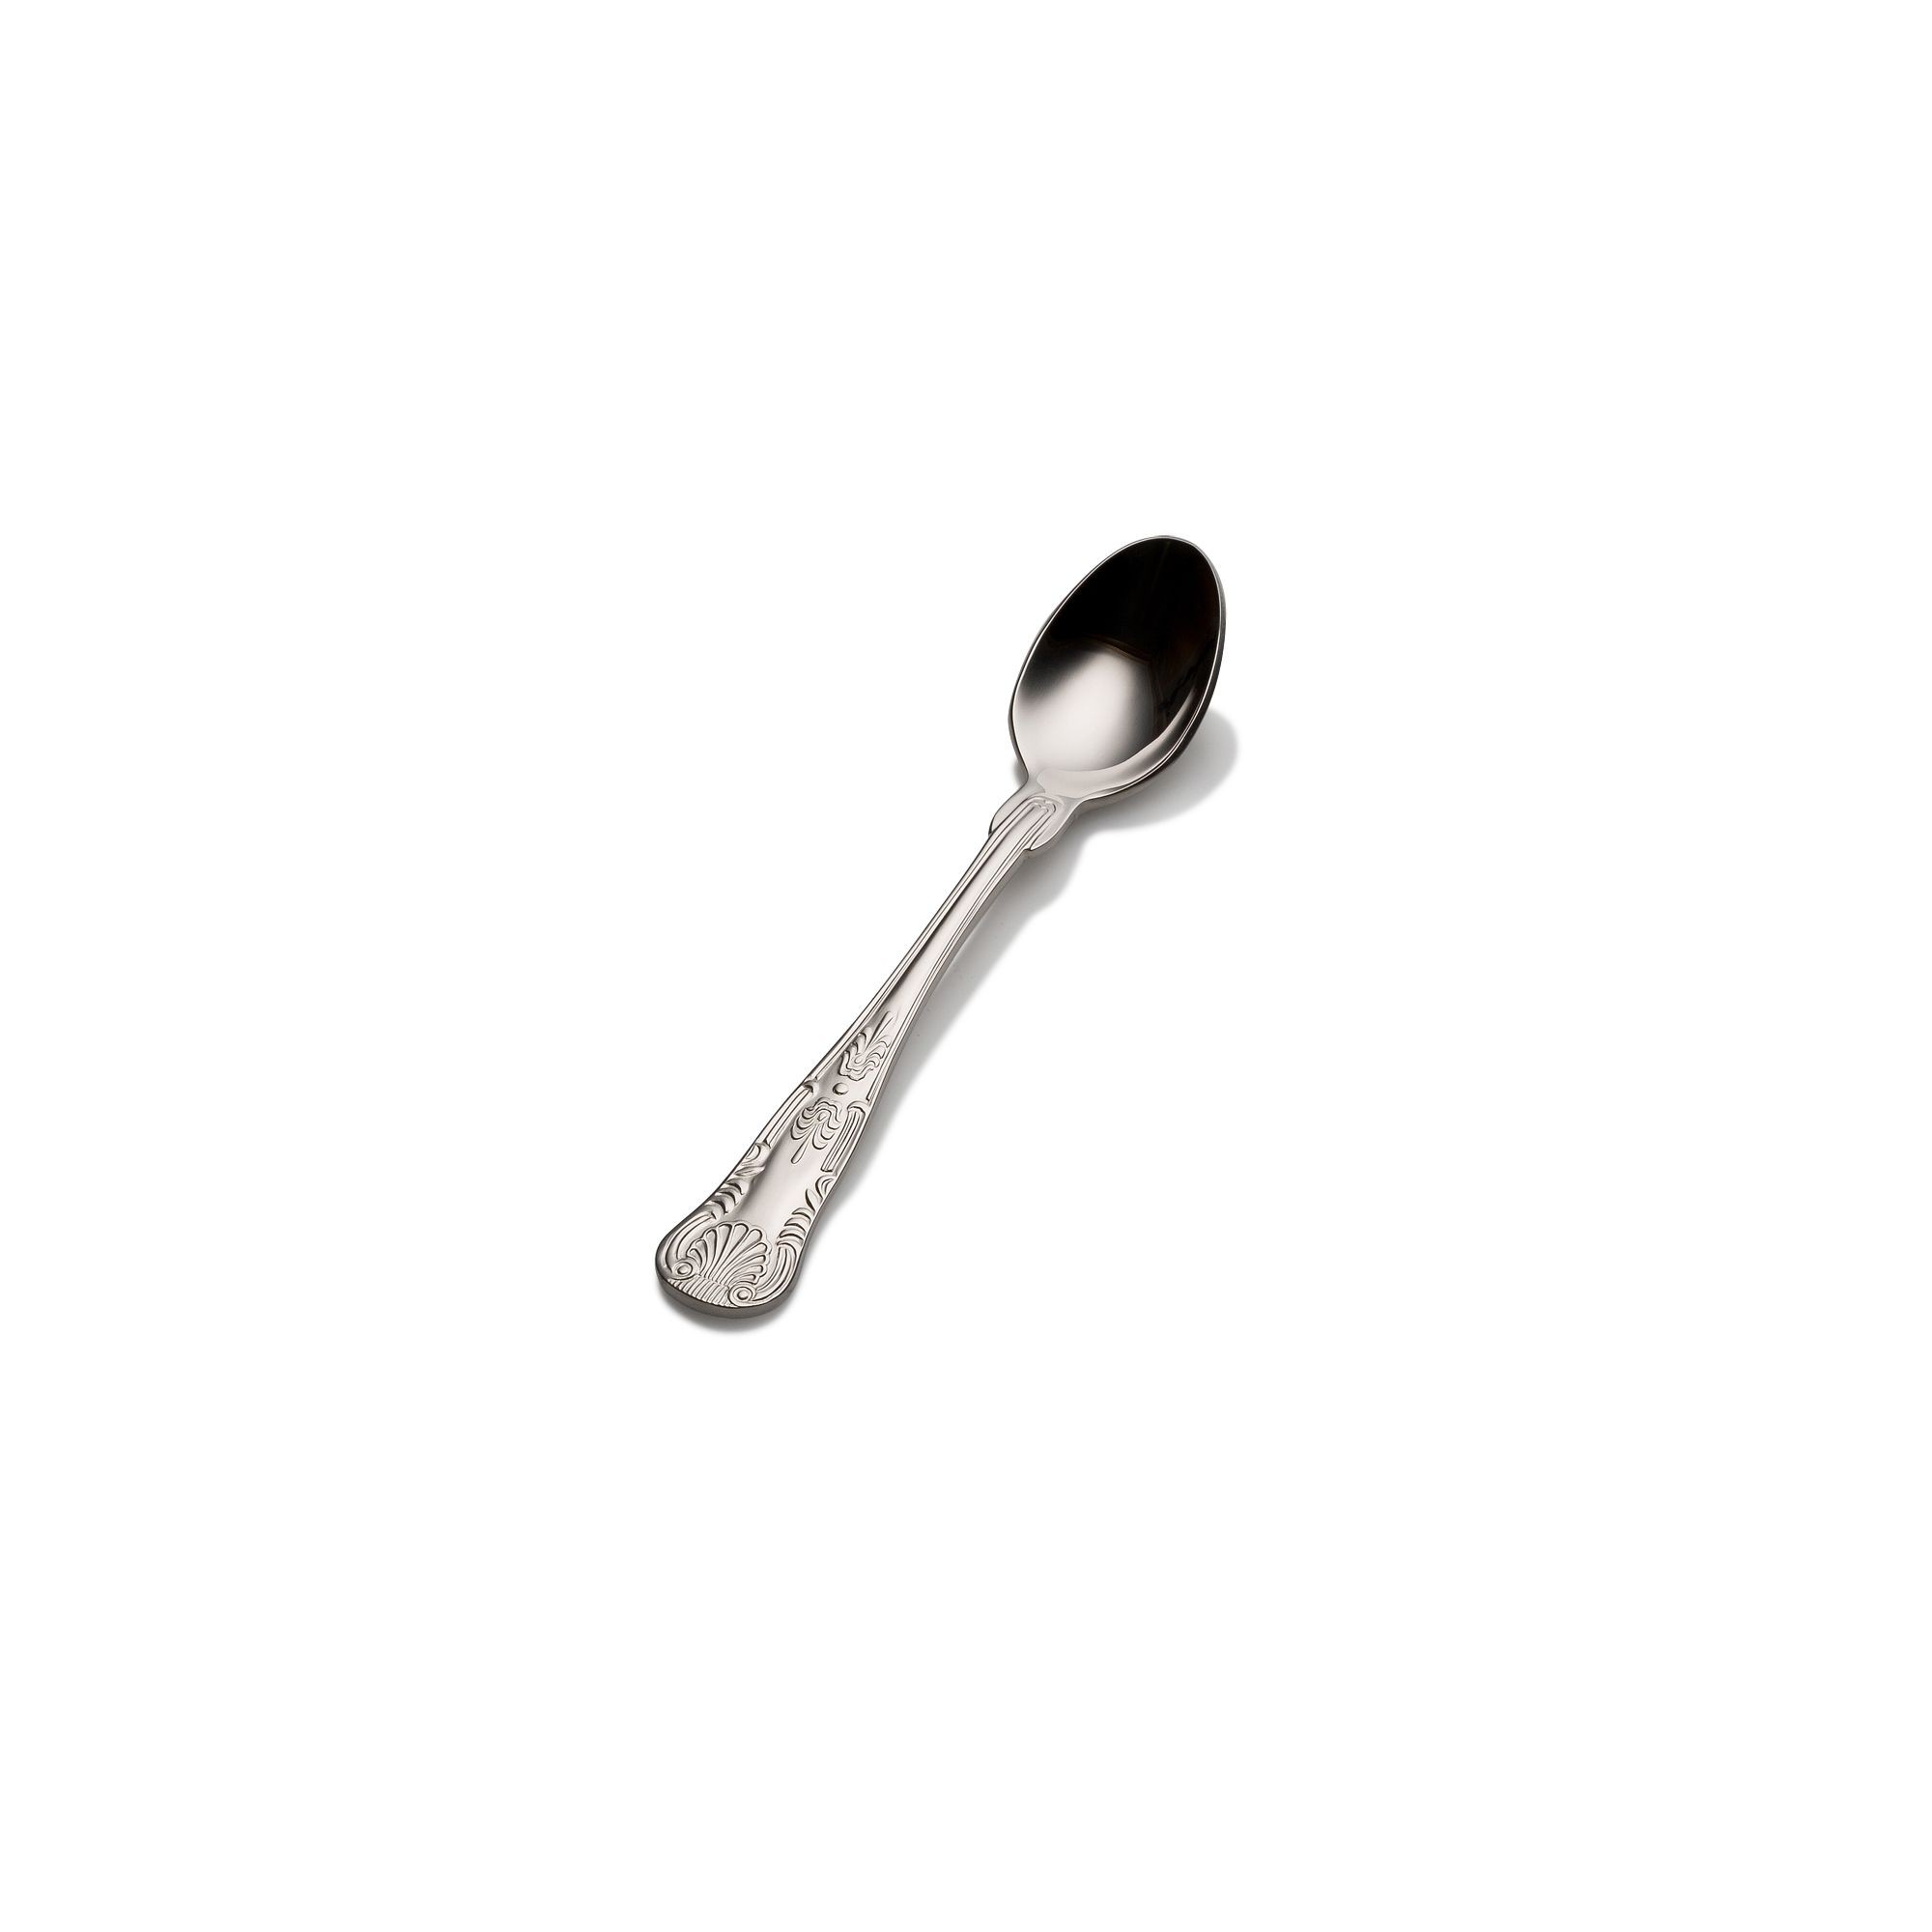 Bon Chef S2716 Kings 18/8 Stainless Steel Demitasse Spoon